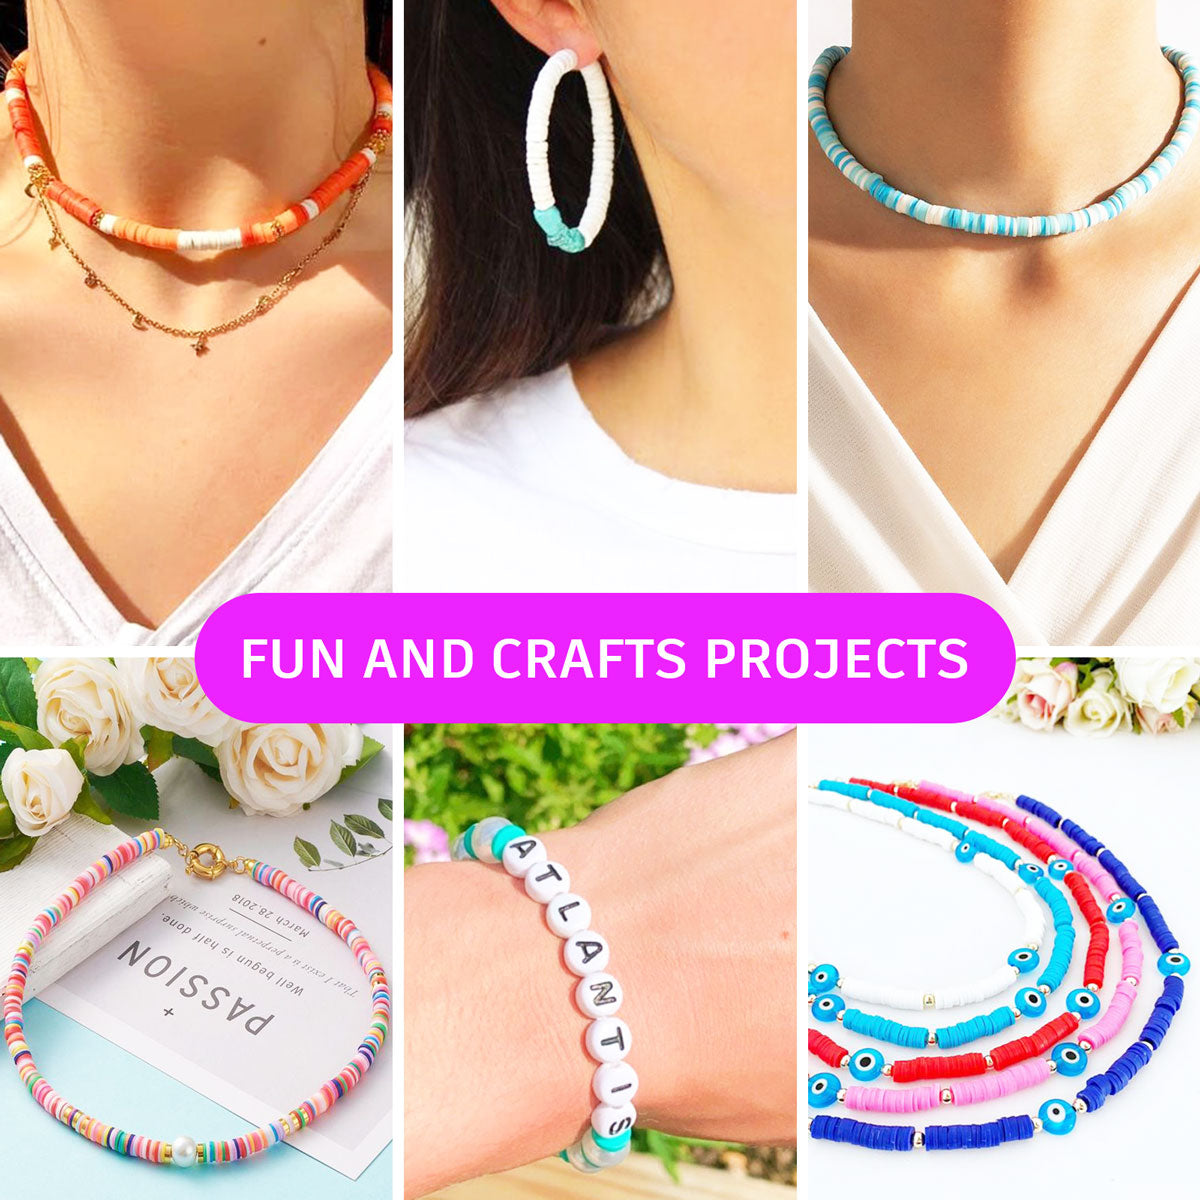 28 Color DIY Thread Bracelet Making Beads Kit Letter Beads Hand